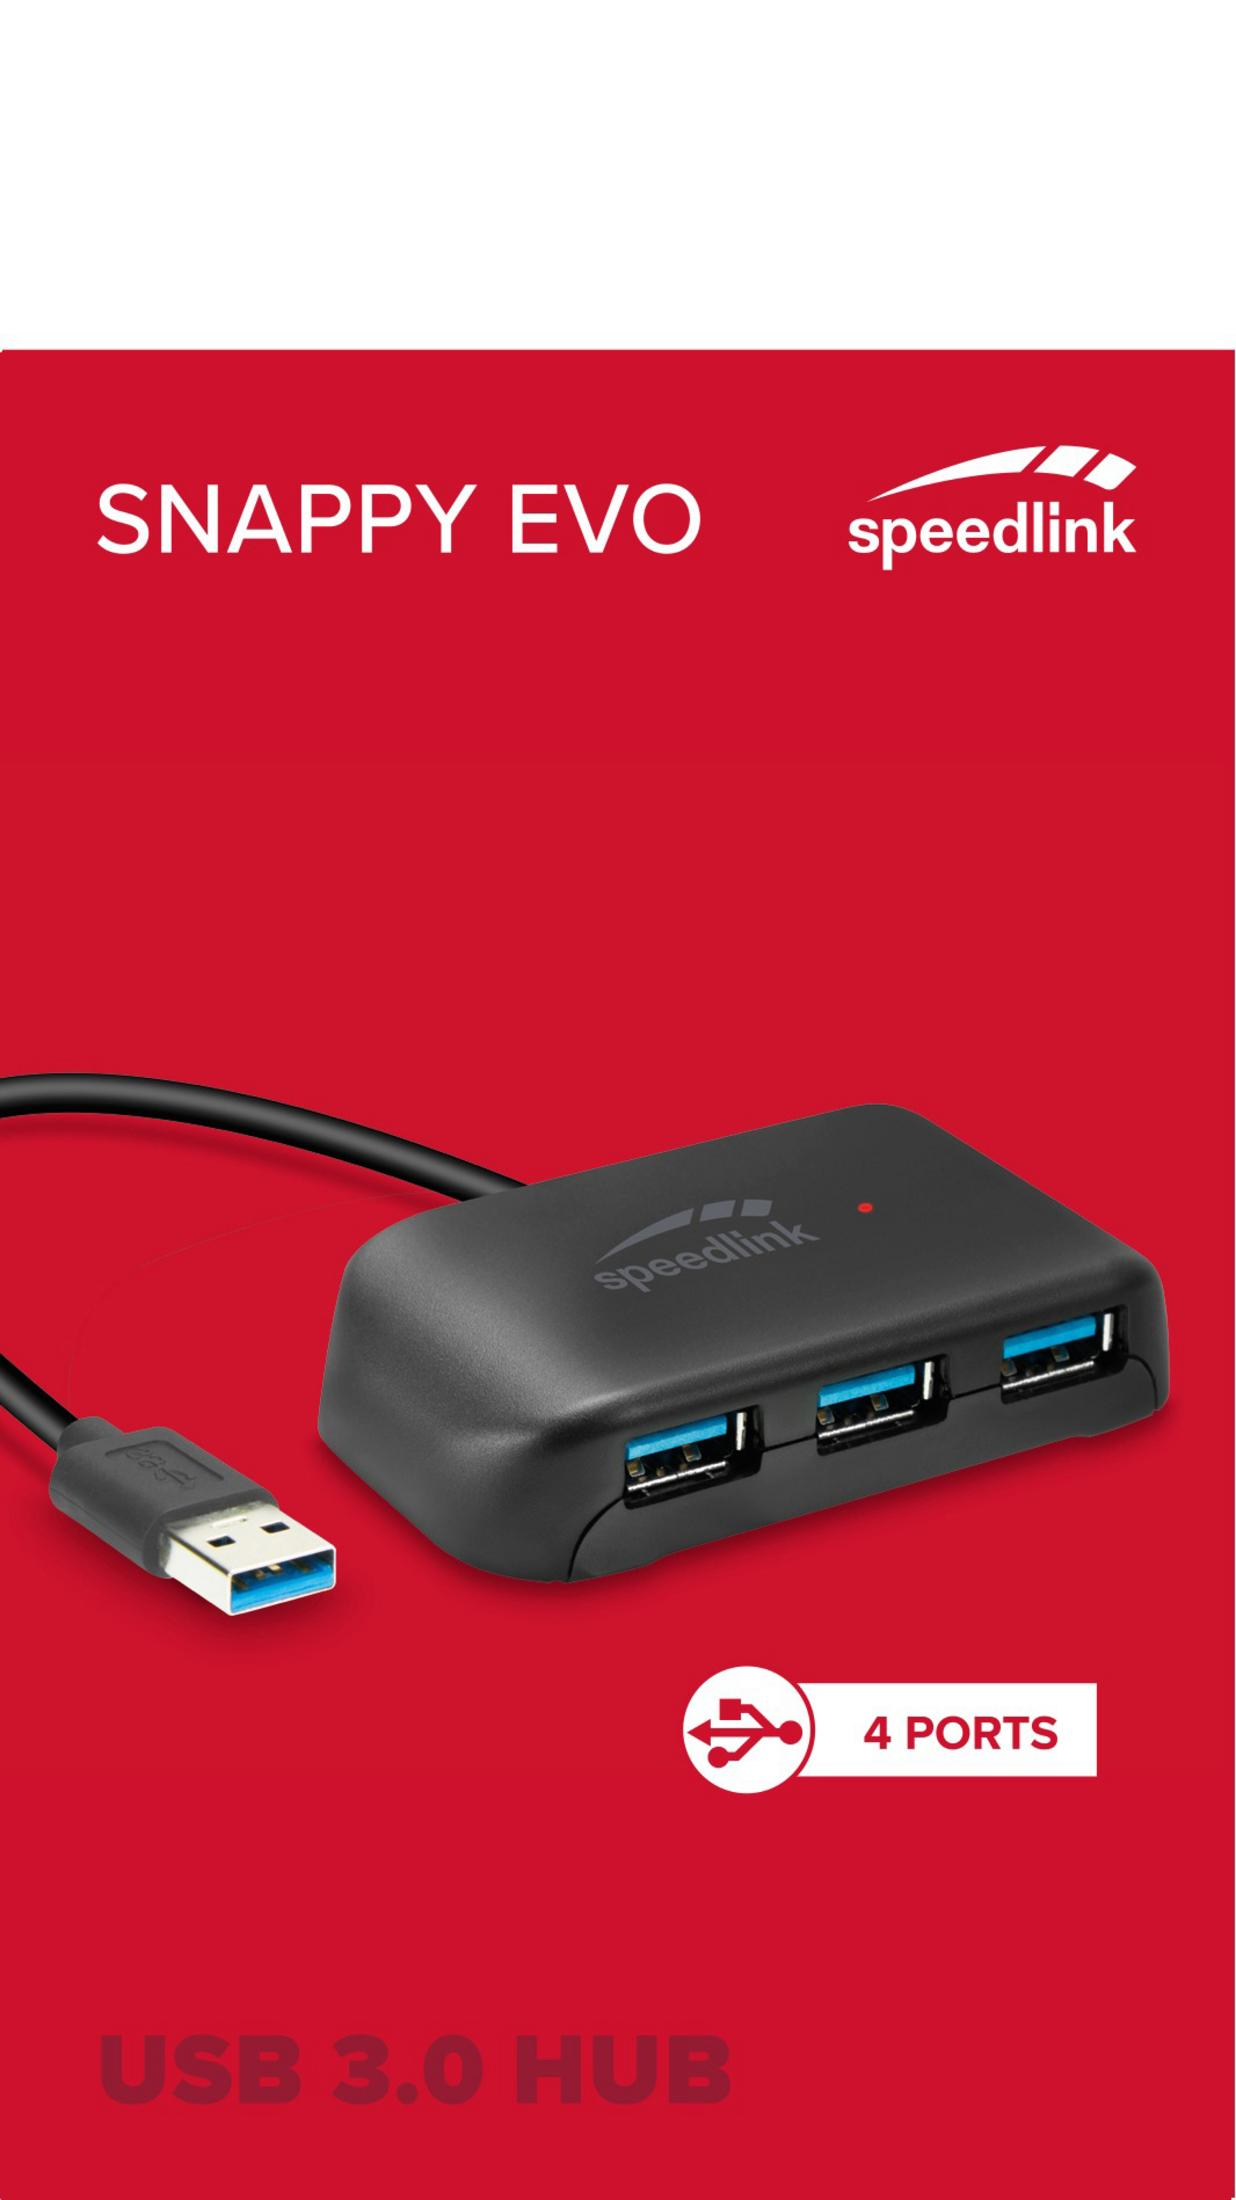 SL-140107-BK USB 3.0, HUB Schwarz SPEEDLINK 4-PORT EVO USB SNAPPY USB Hub,